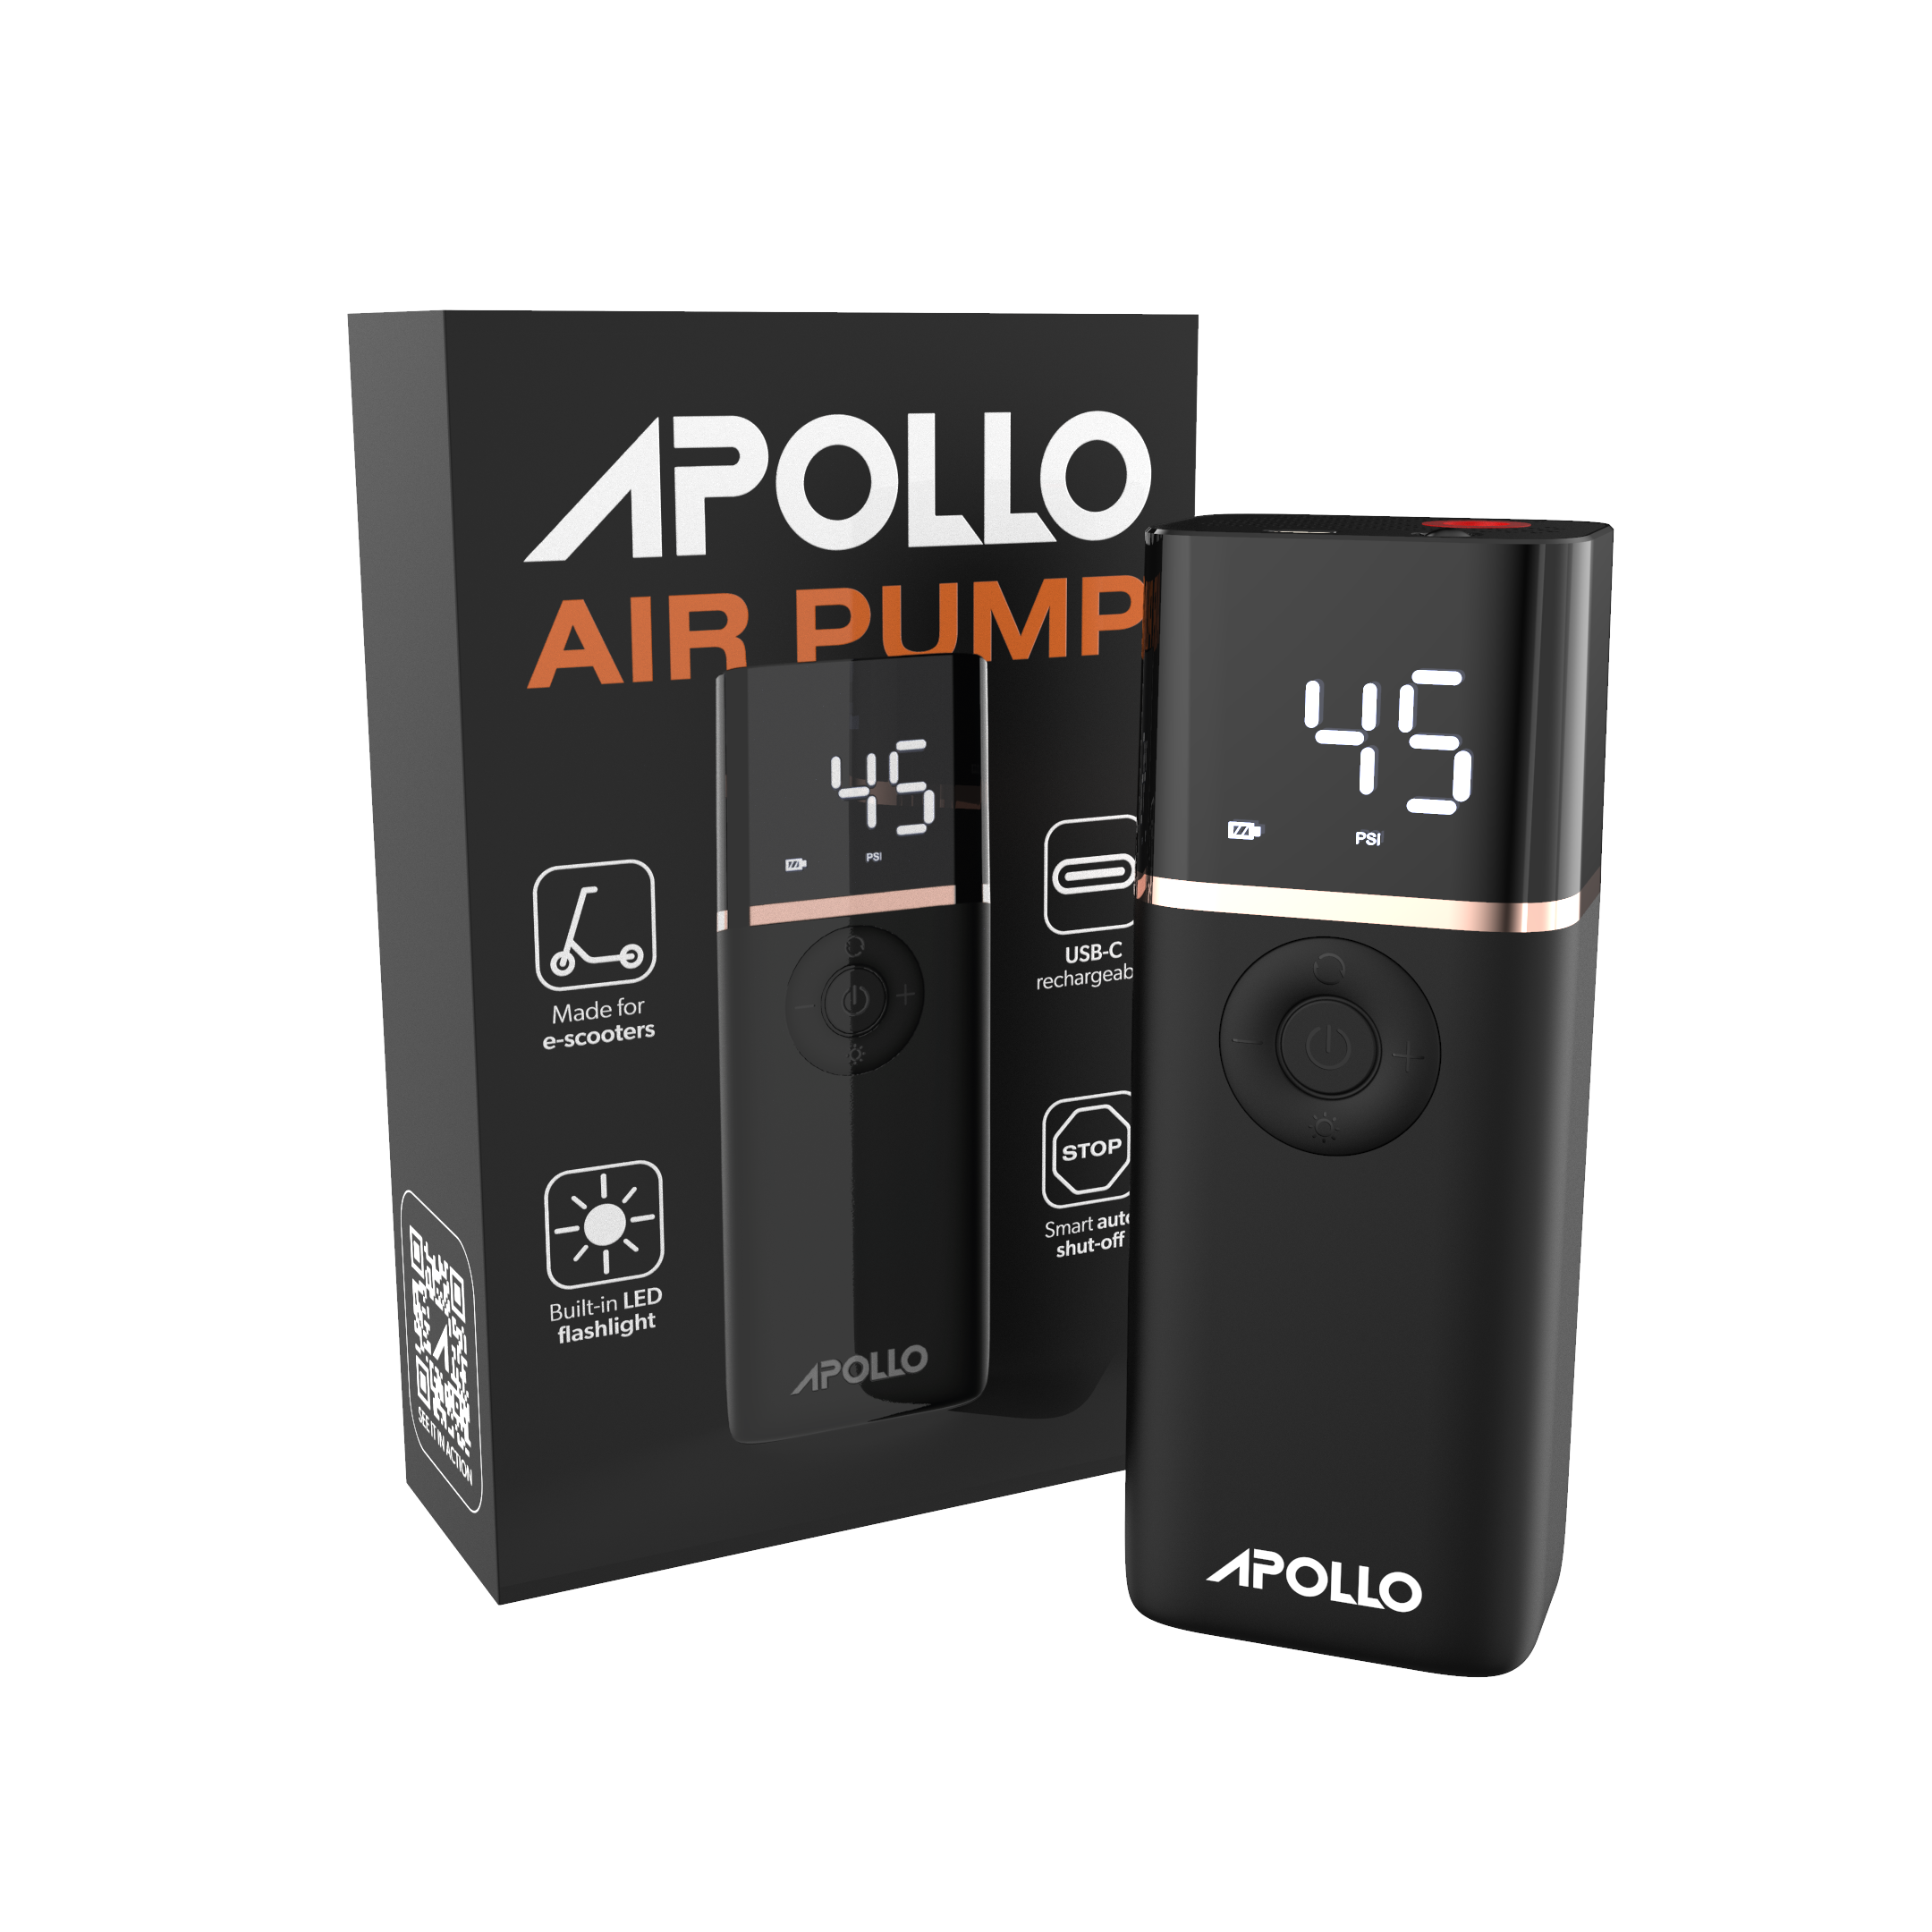 Apollo Powered Air Pump